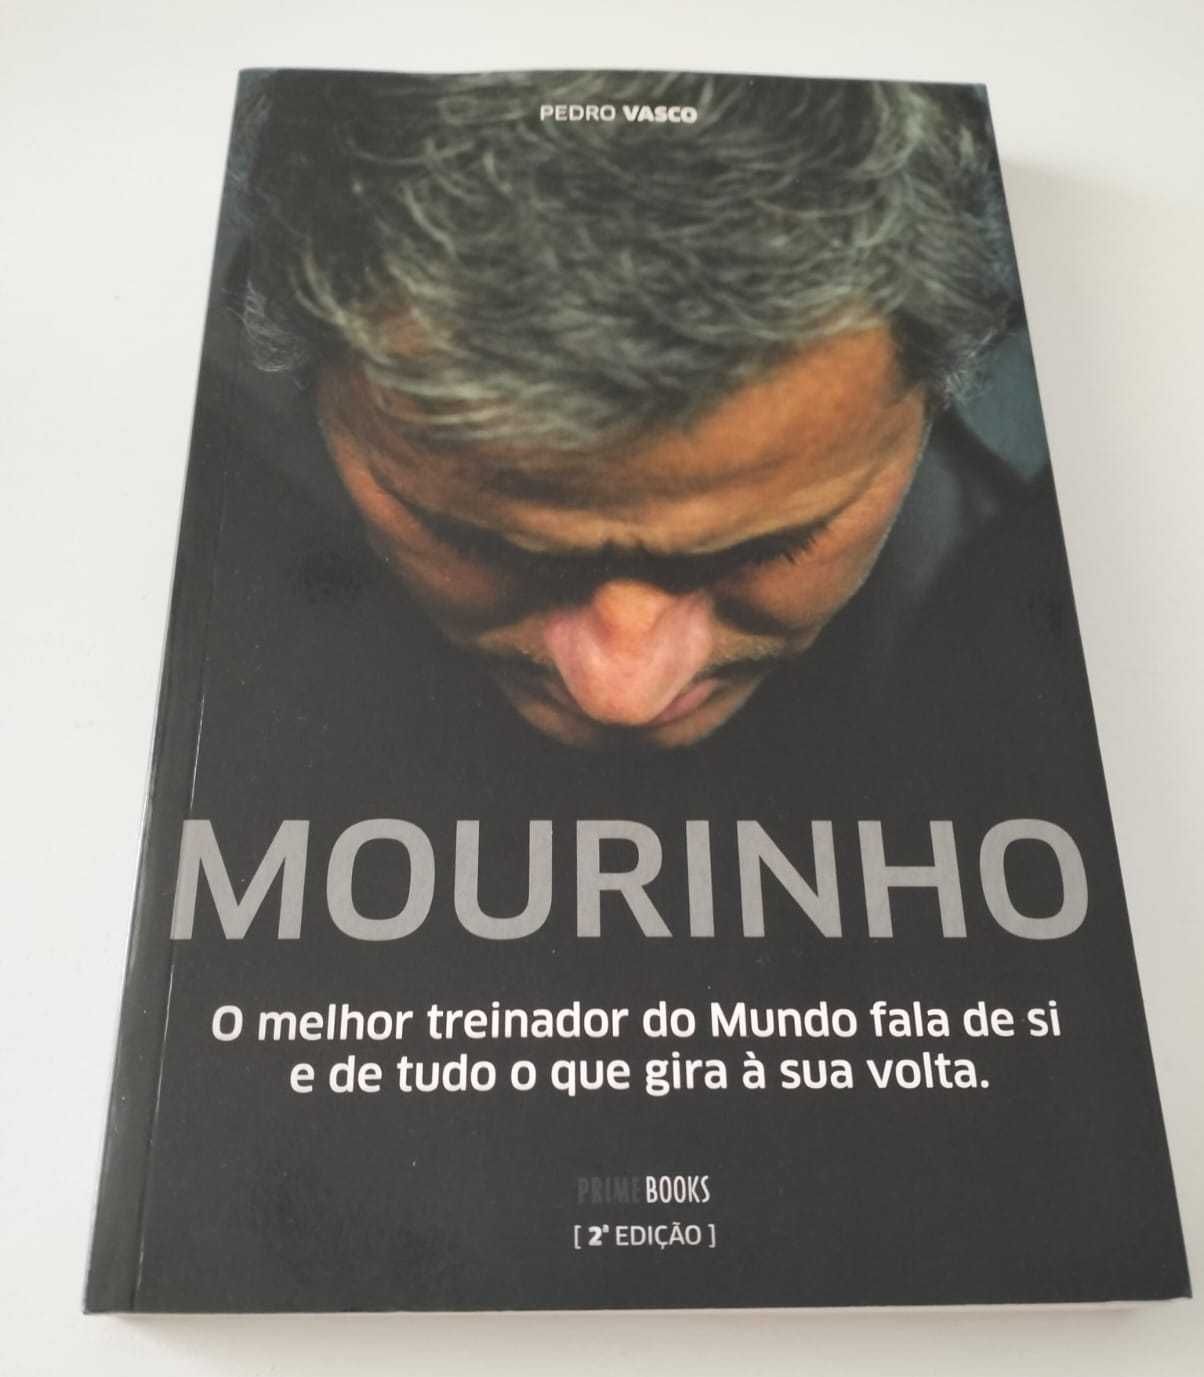 Livro "Mourinho" - Pedro Vasco